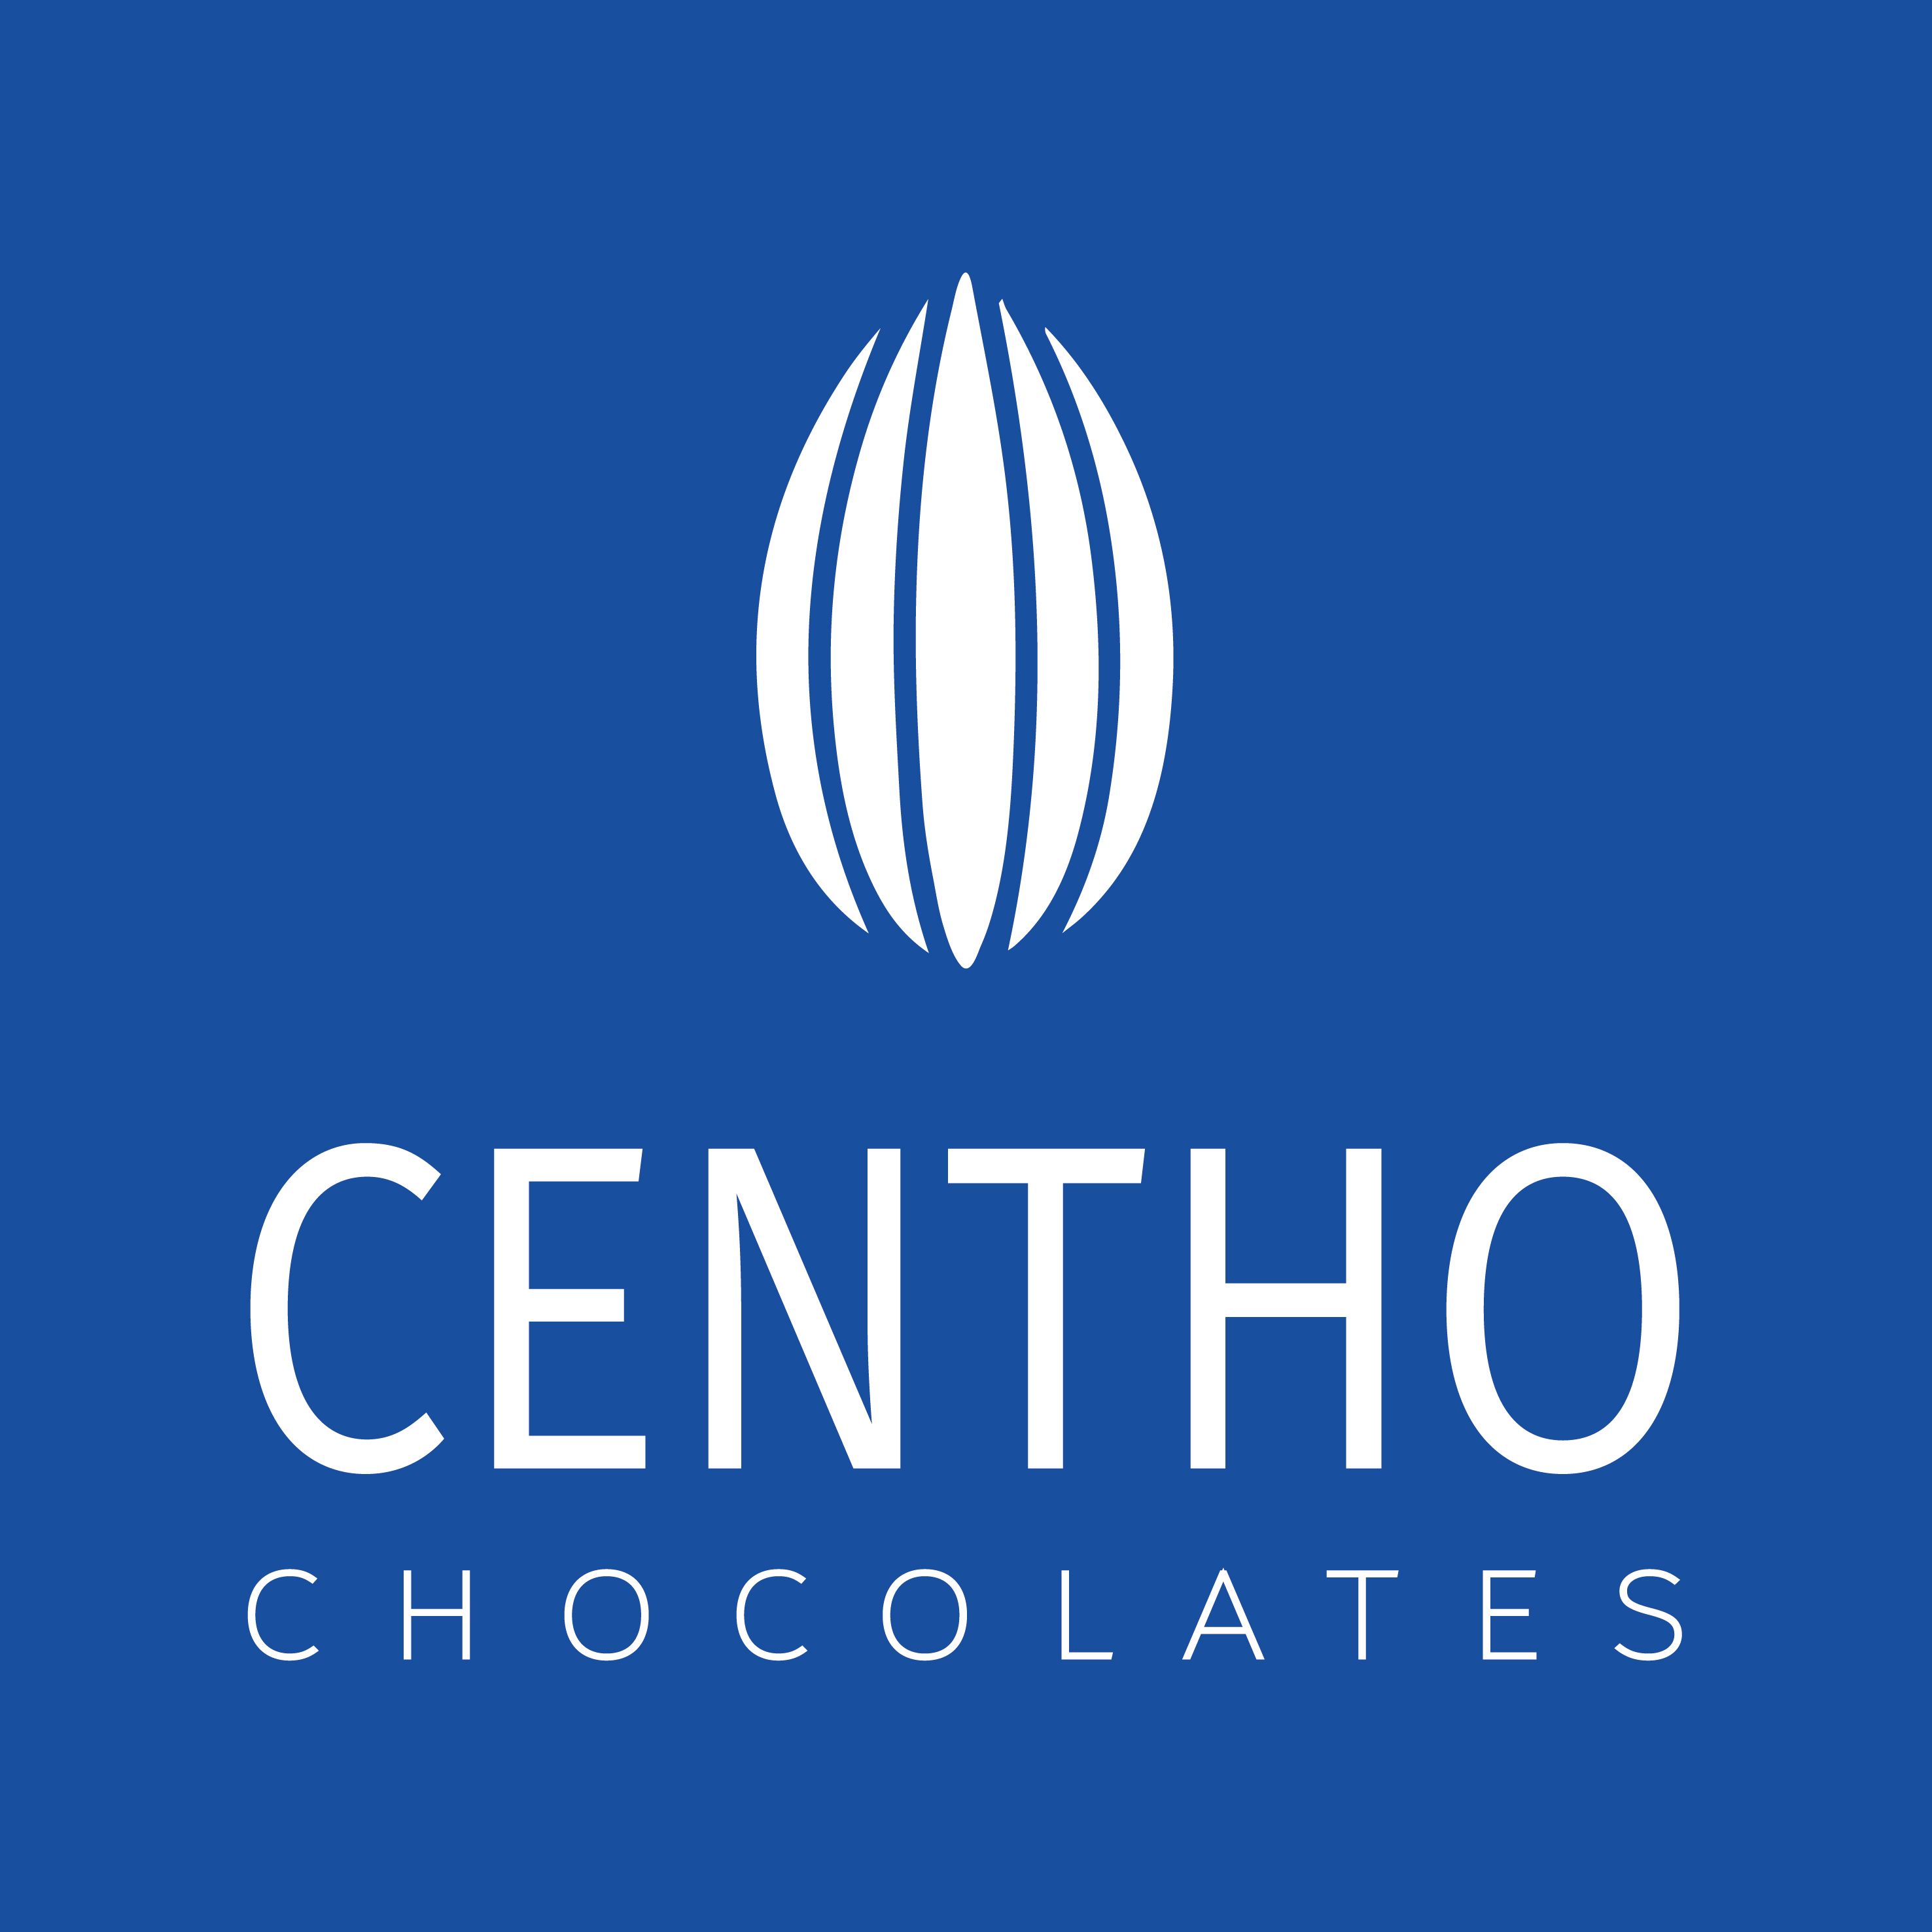 CENTHO - CHOCOLATES